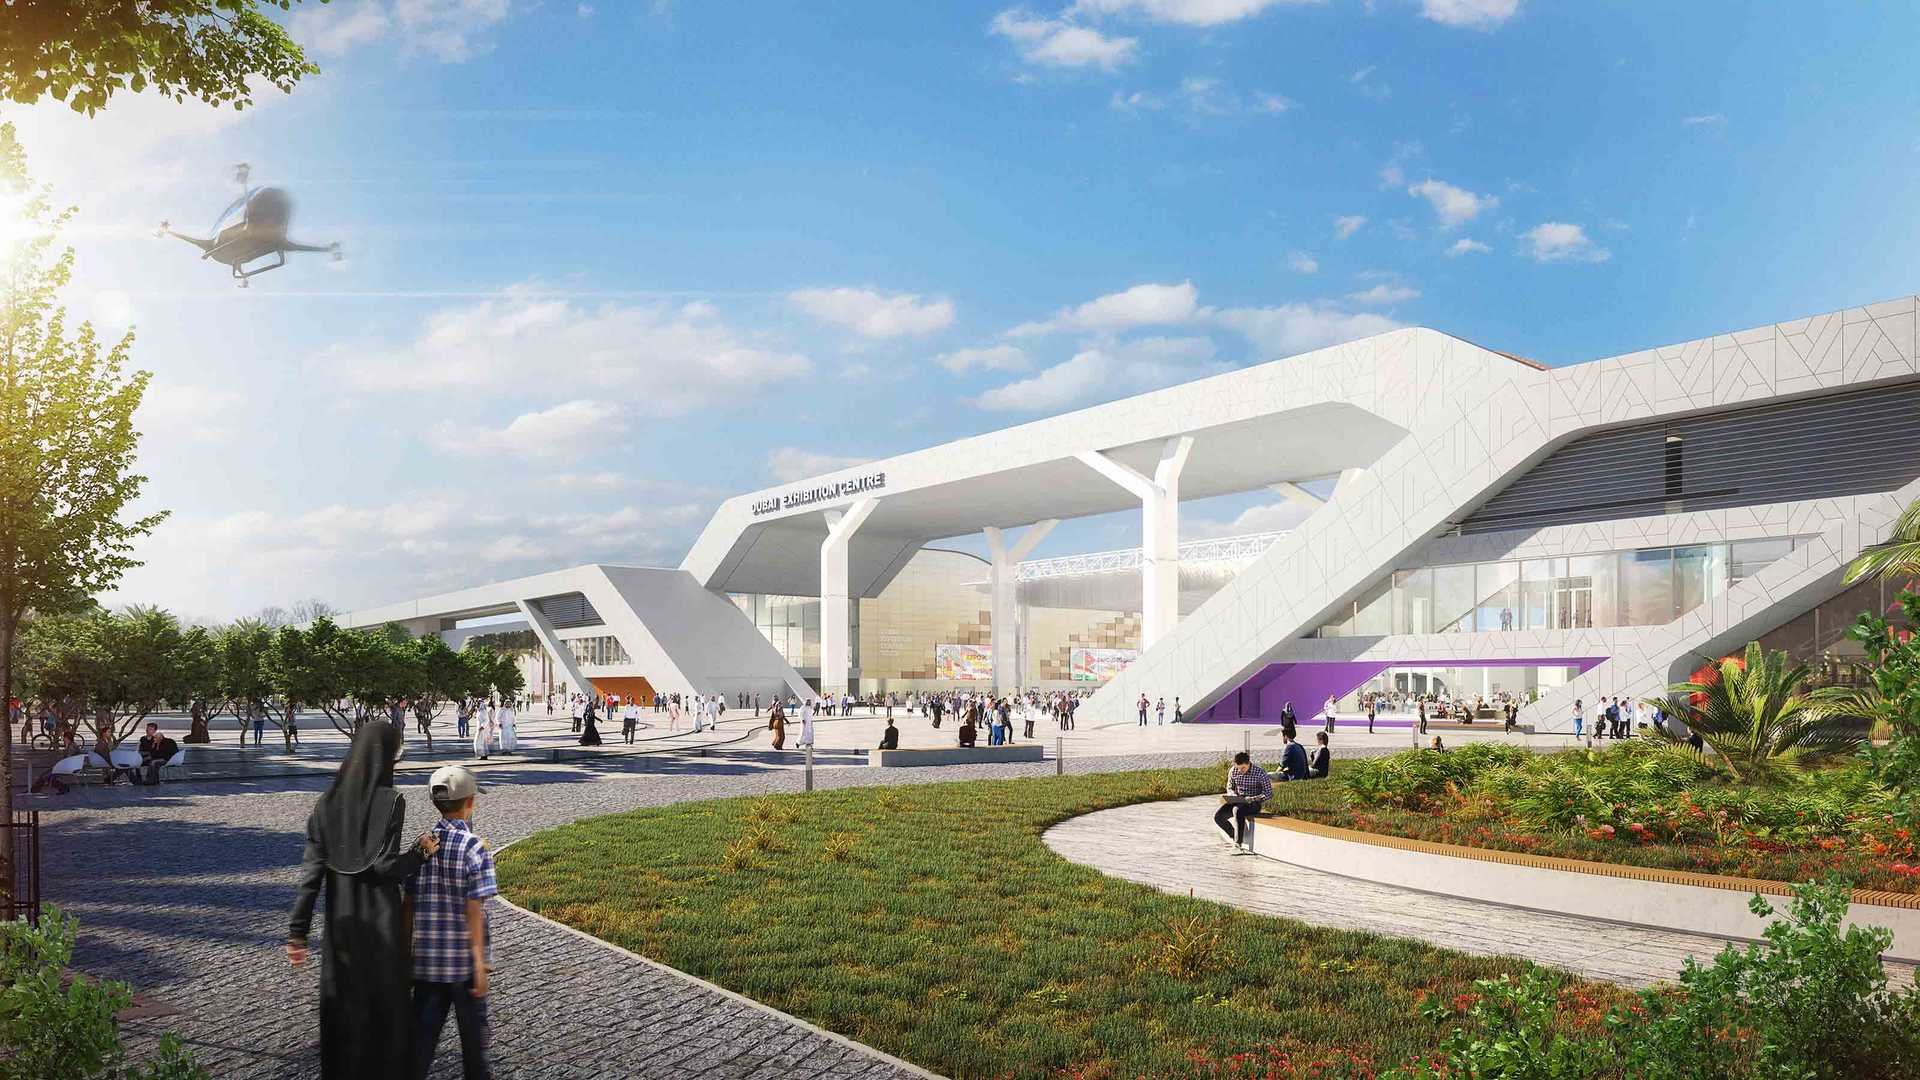 Dubai Exhibition Centre - Expo 2020 Dubai